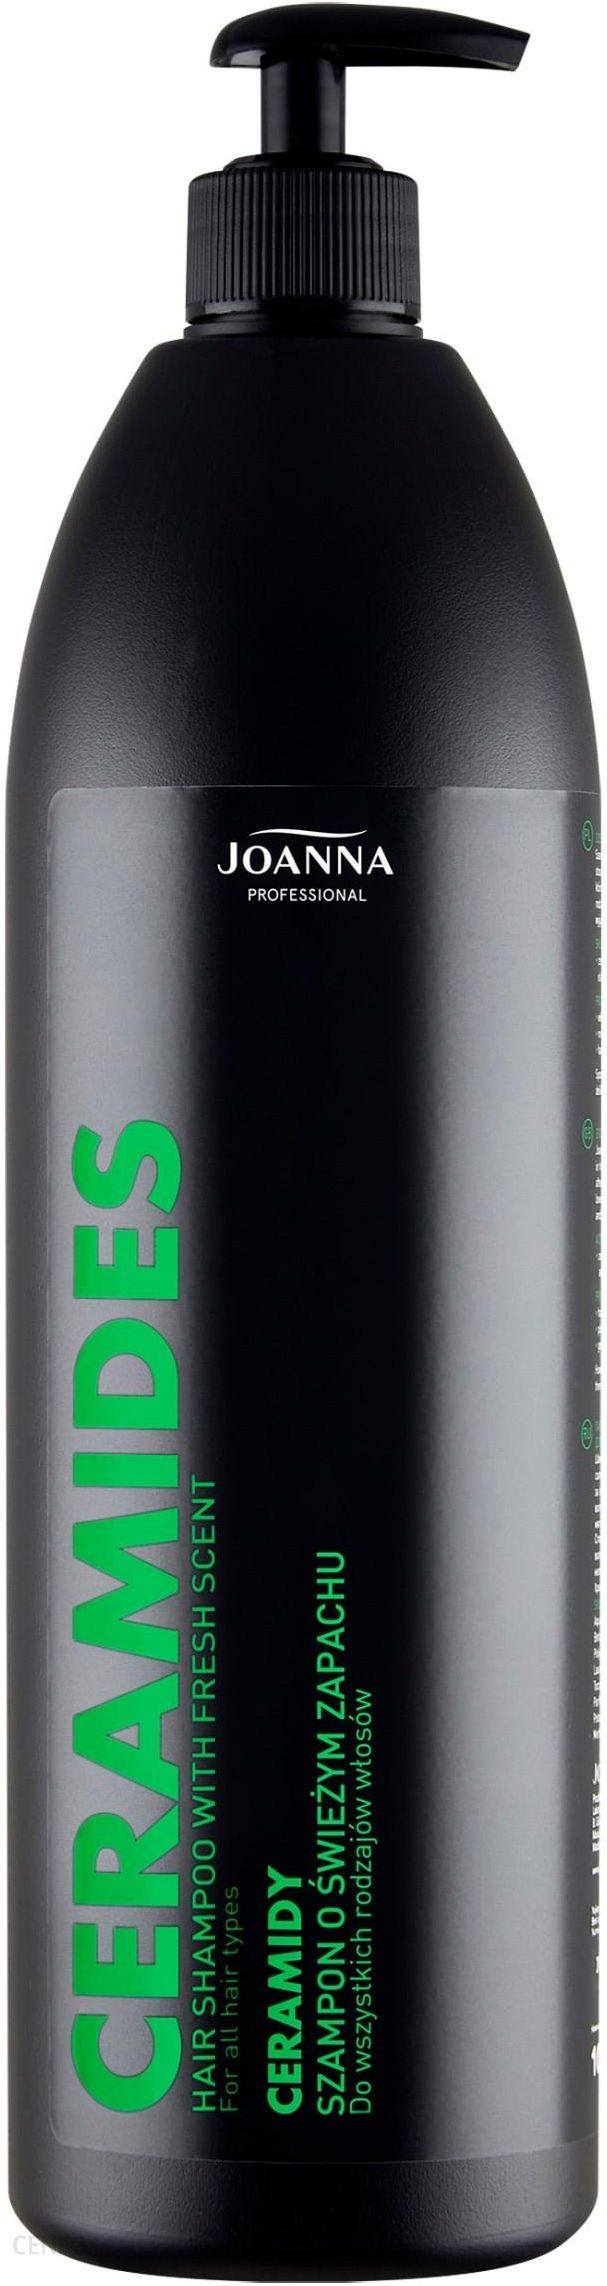 joanna professional szampon do wszystkich rodzajów włosów oczyszczający 1l